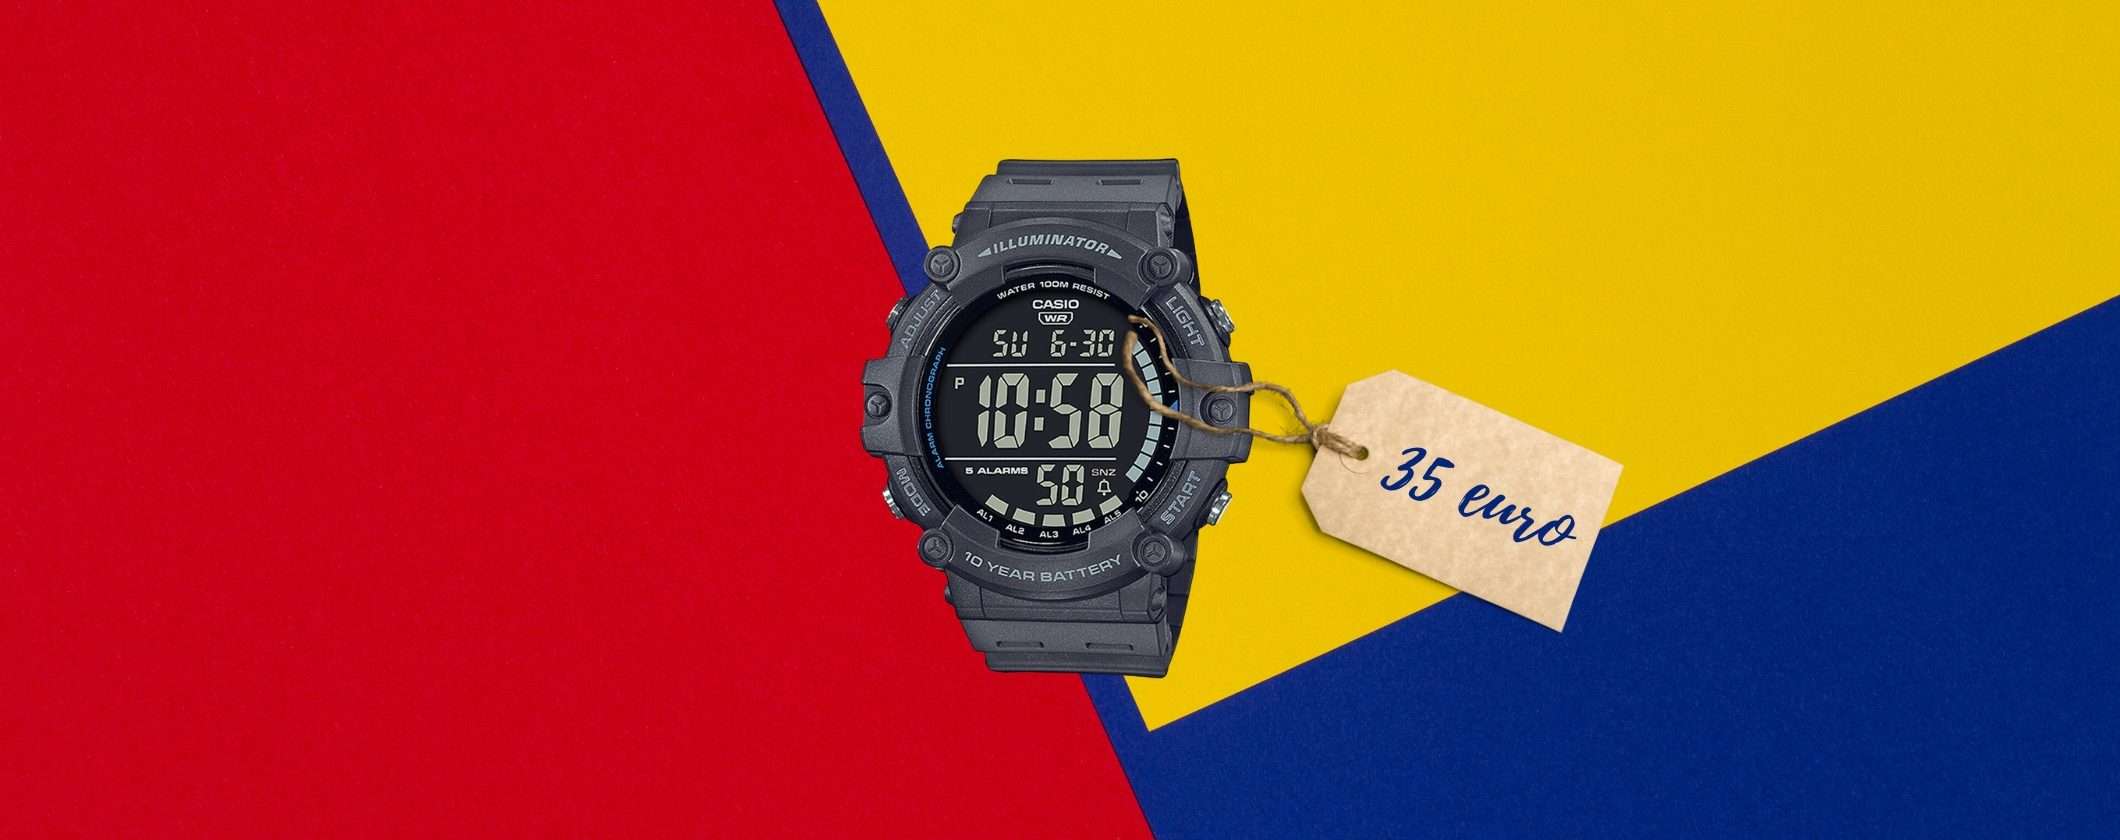 Orologio CASIO a soli 35€: MIRACOLO di eBay